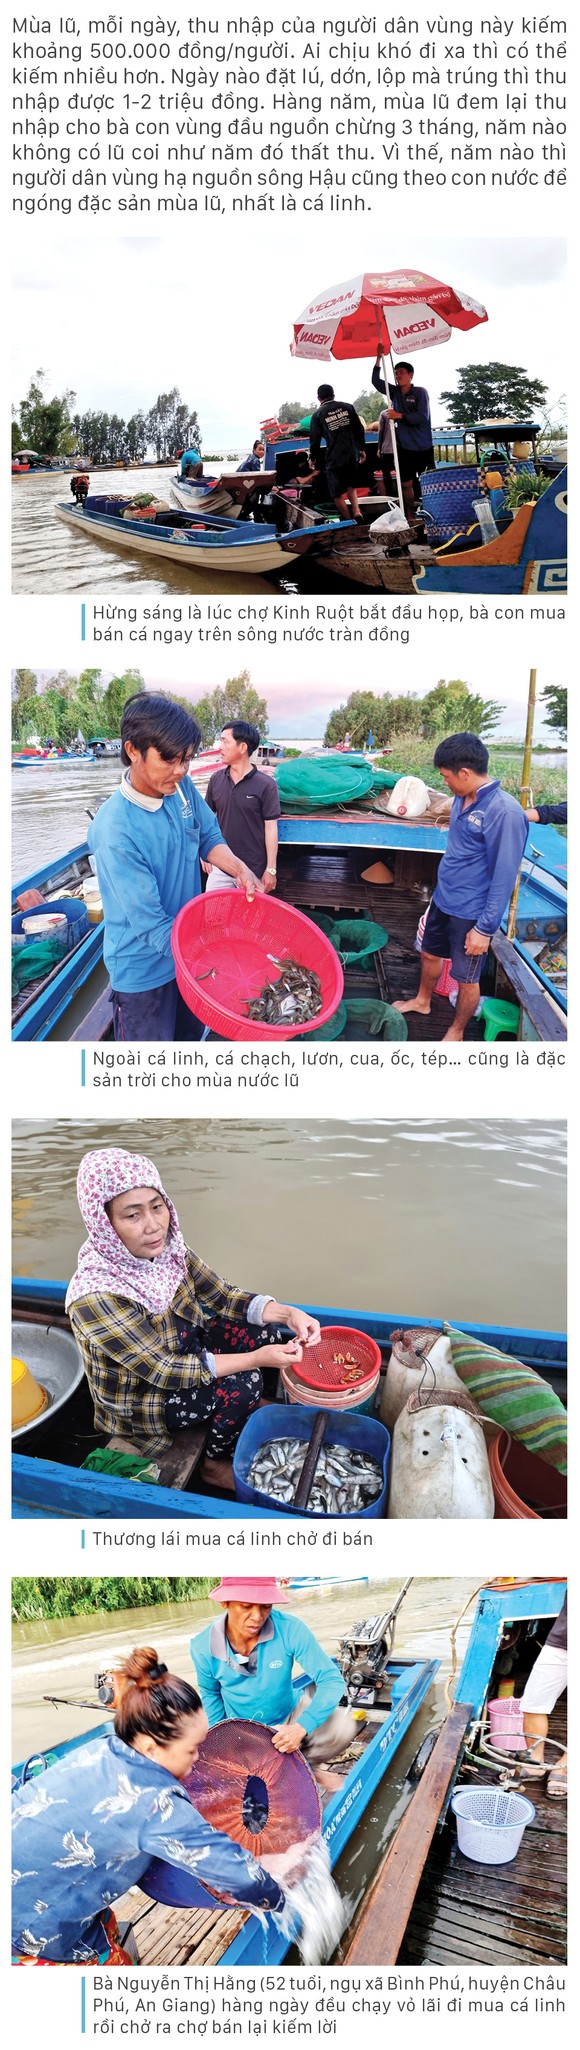 Nhộn nhịp chợ cá đặc sản mùa nước lũ ảnh 4